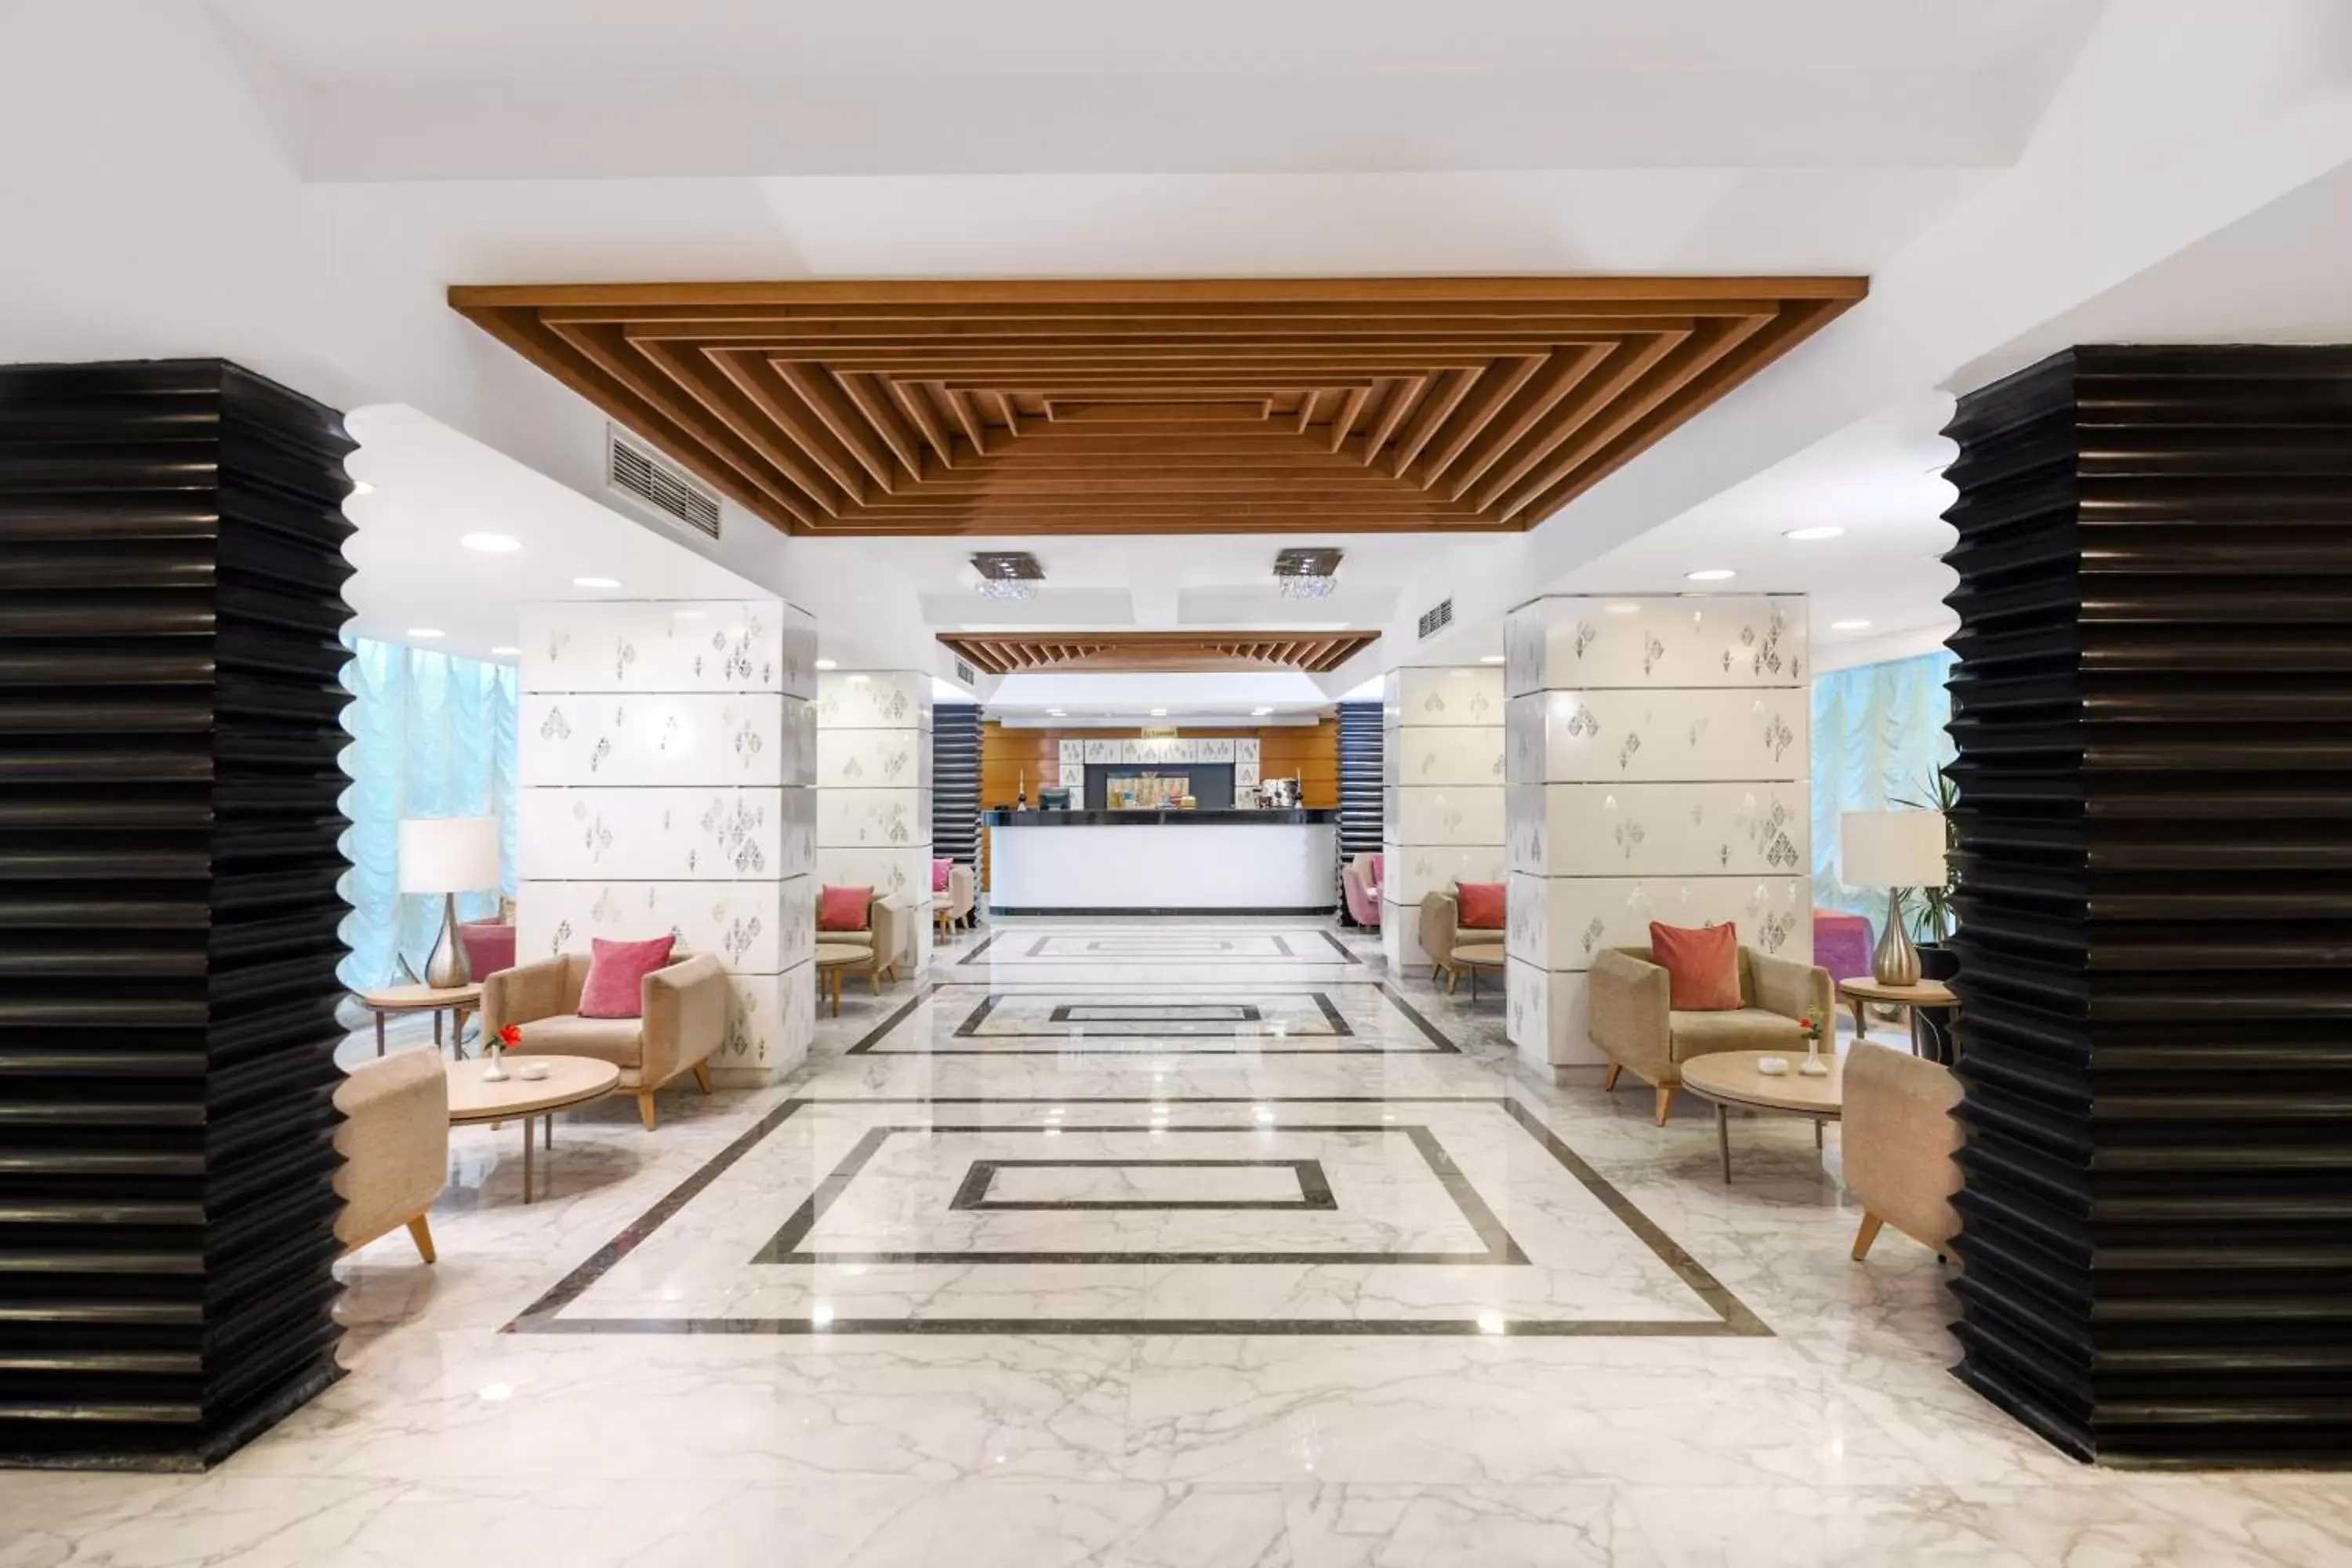 Lobby or reception in Tolip El Galaa Hotel Cairo